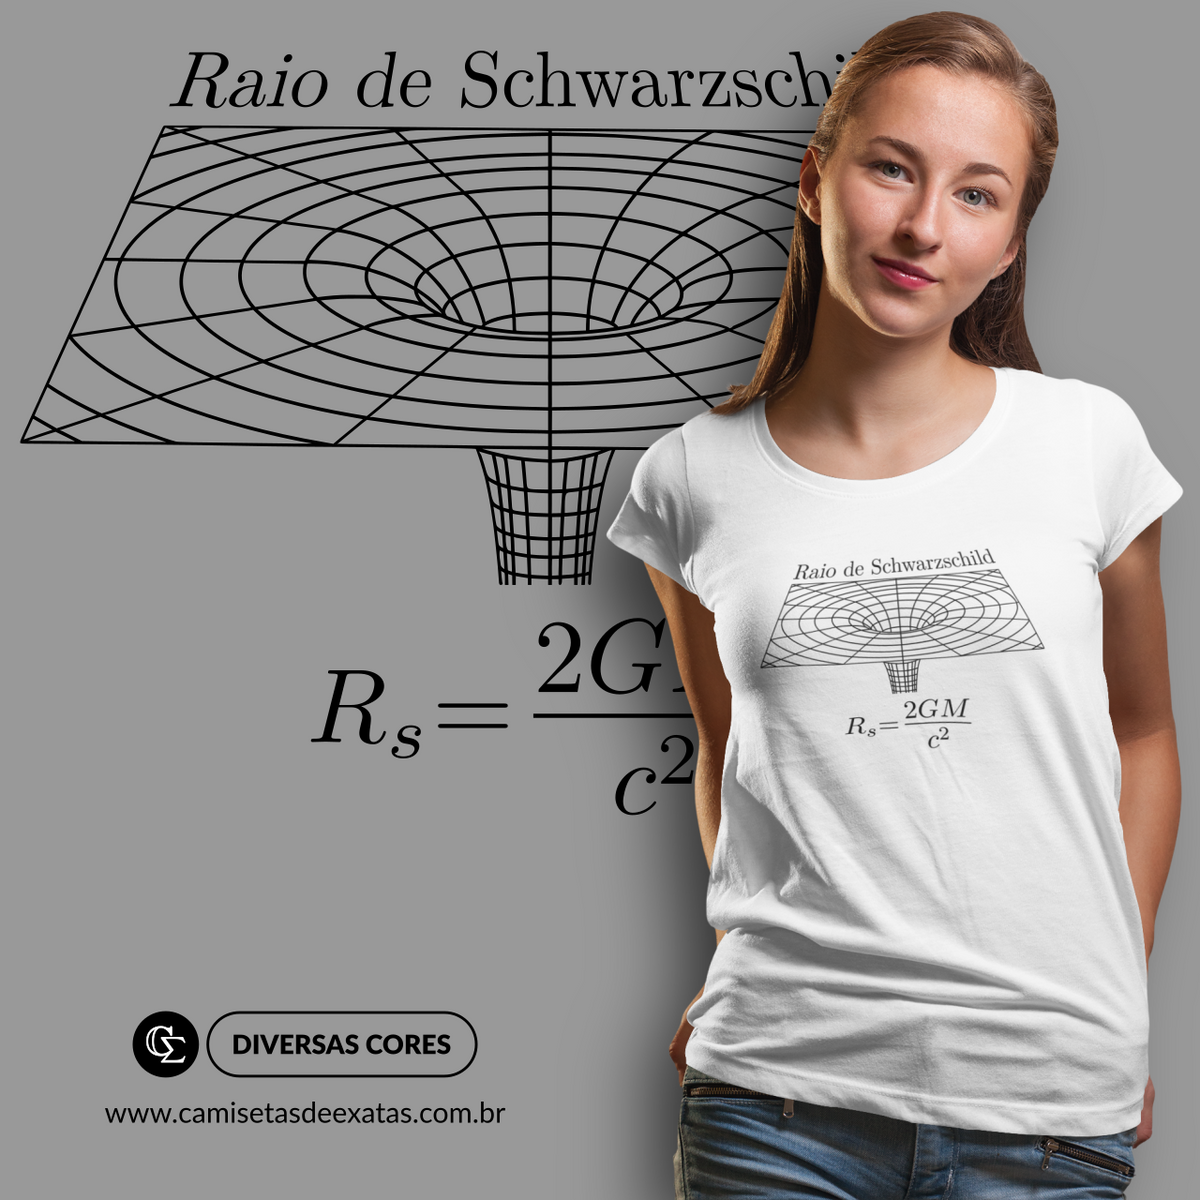 Nome do produto: RAIO DE SCHWARZSCHILD [3]